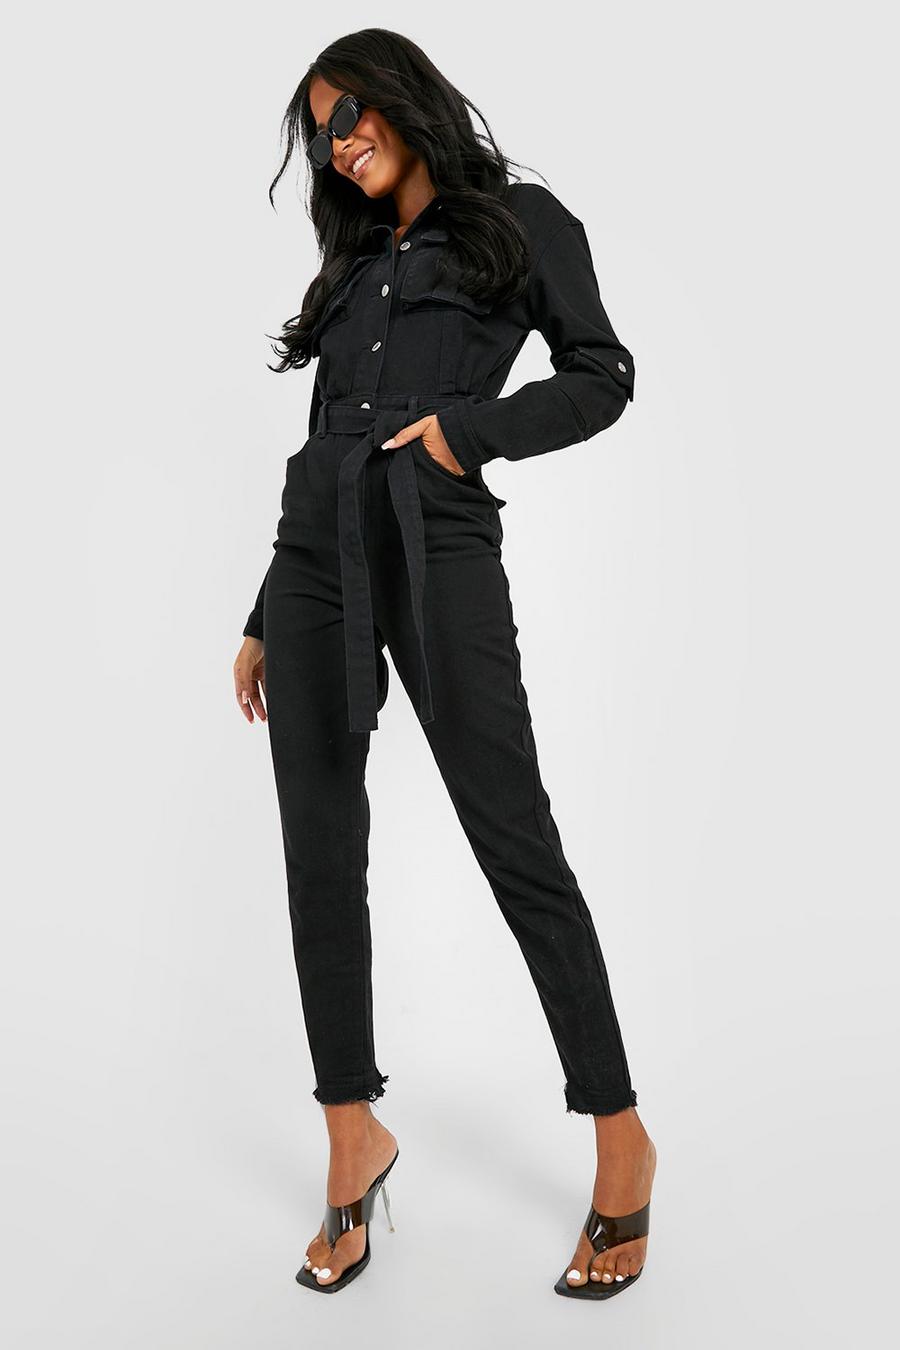 שחור סרבל ארוך מבד ג'ינס בסגנון קרגו עם חגורה וגזרת קרסול צרה, לנשים גבוהות image number 1